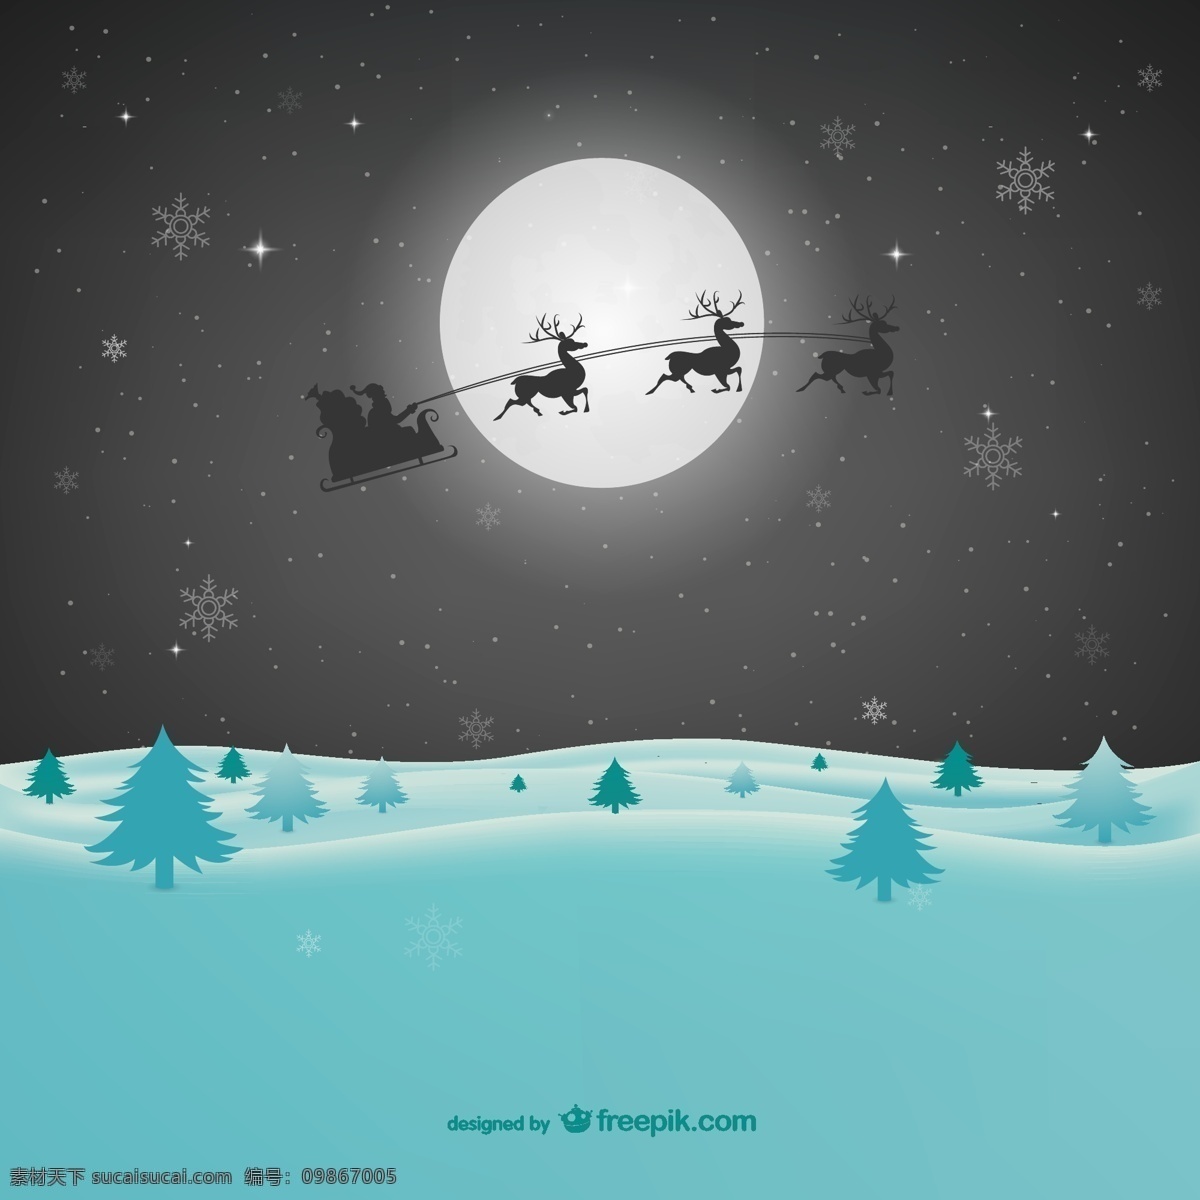 卡通 雪原 圣诞 夜 雪橇 圣诞节 圣诞老人 圣诞夜 矢量图 松树 雪地 雪花 月亮 月夜 节日素材